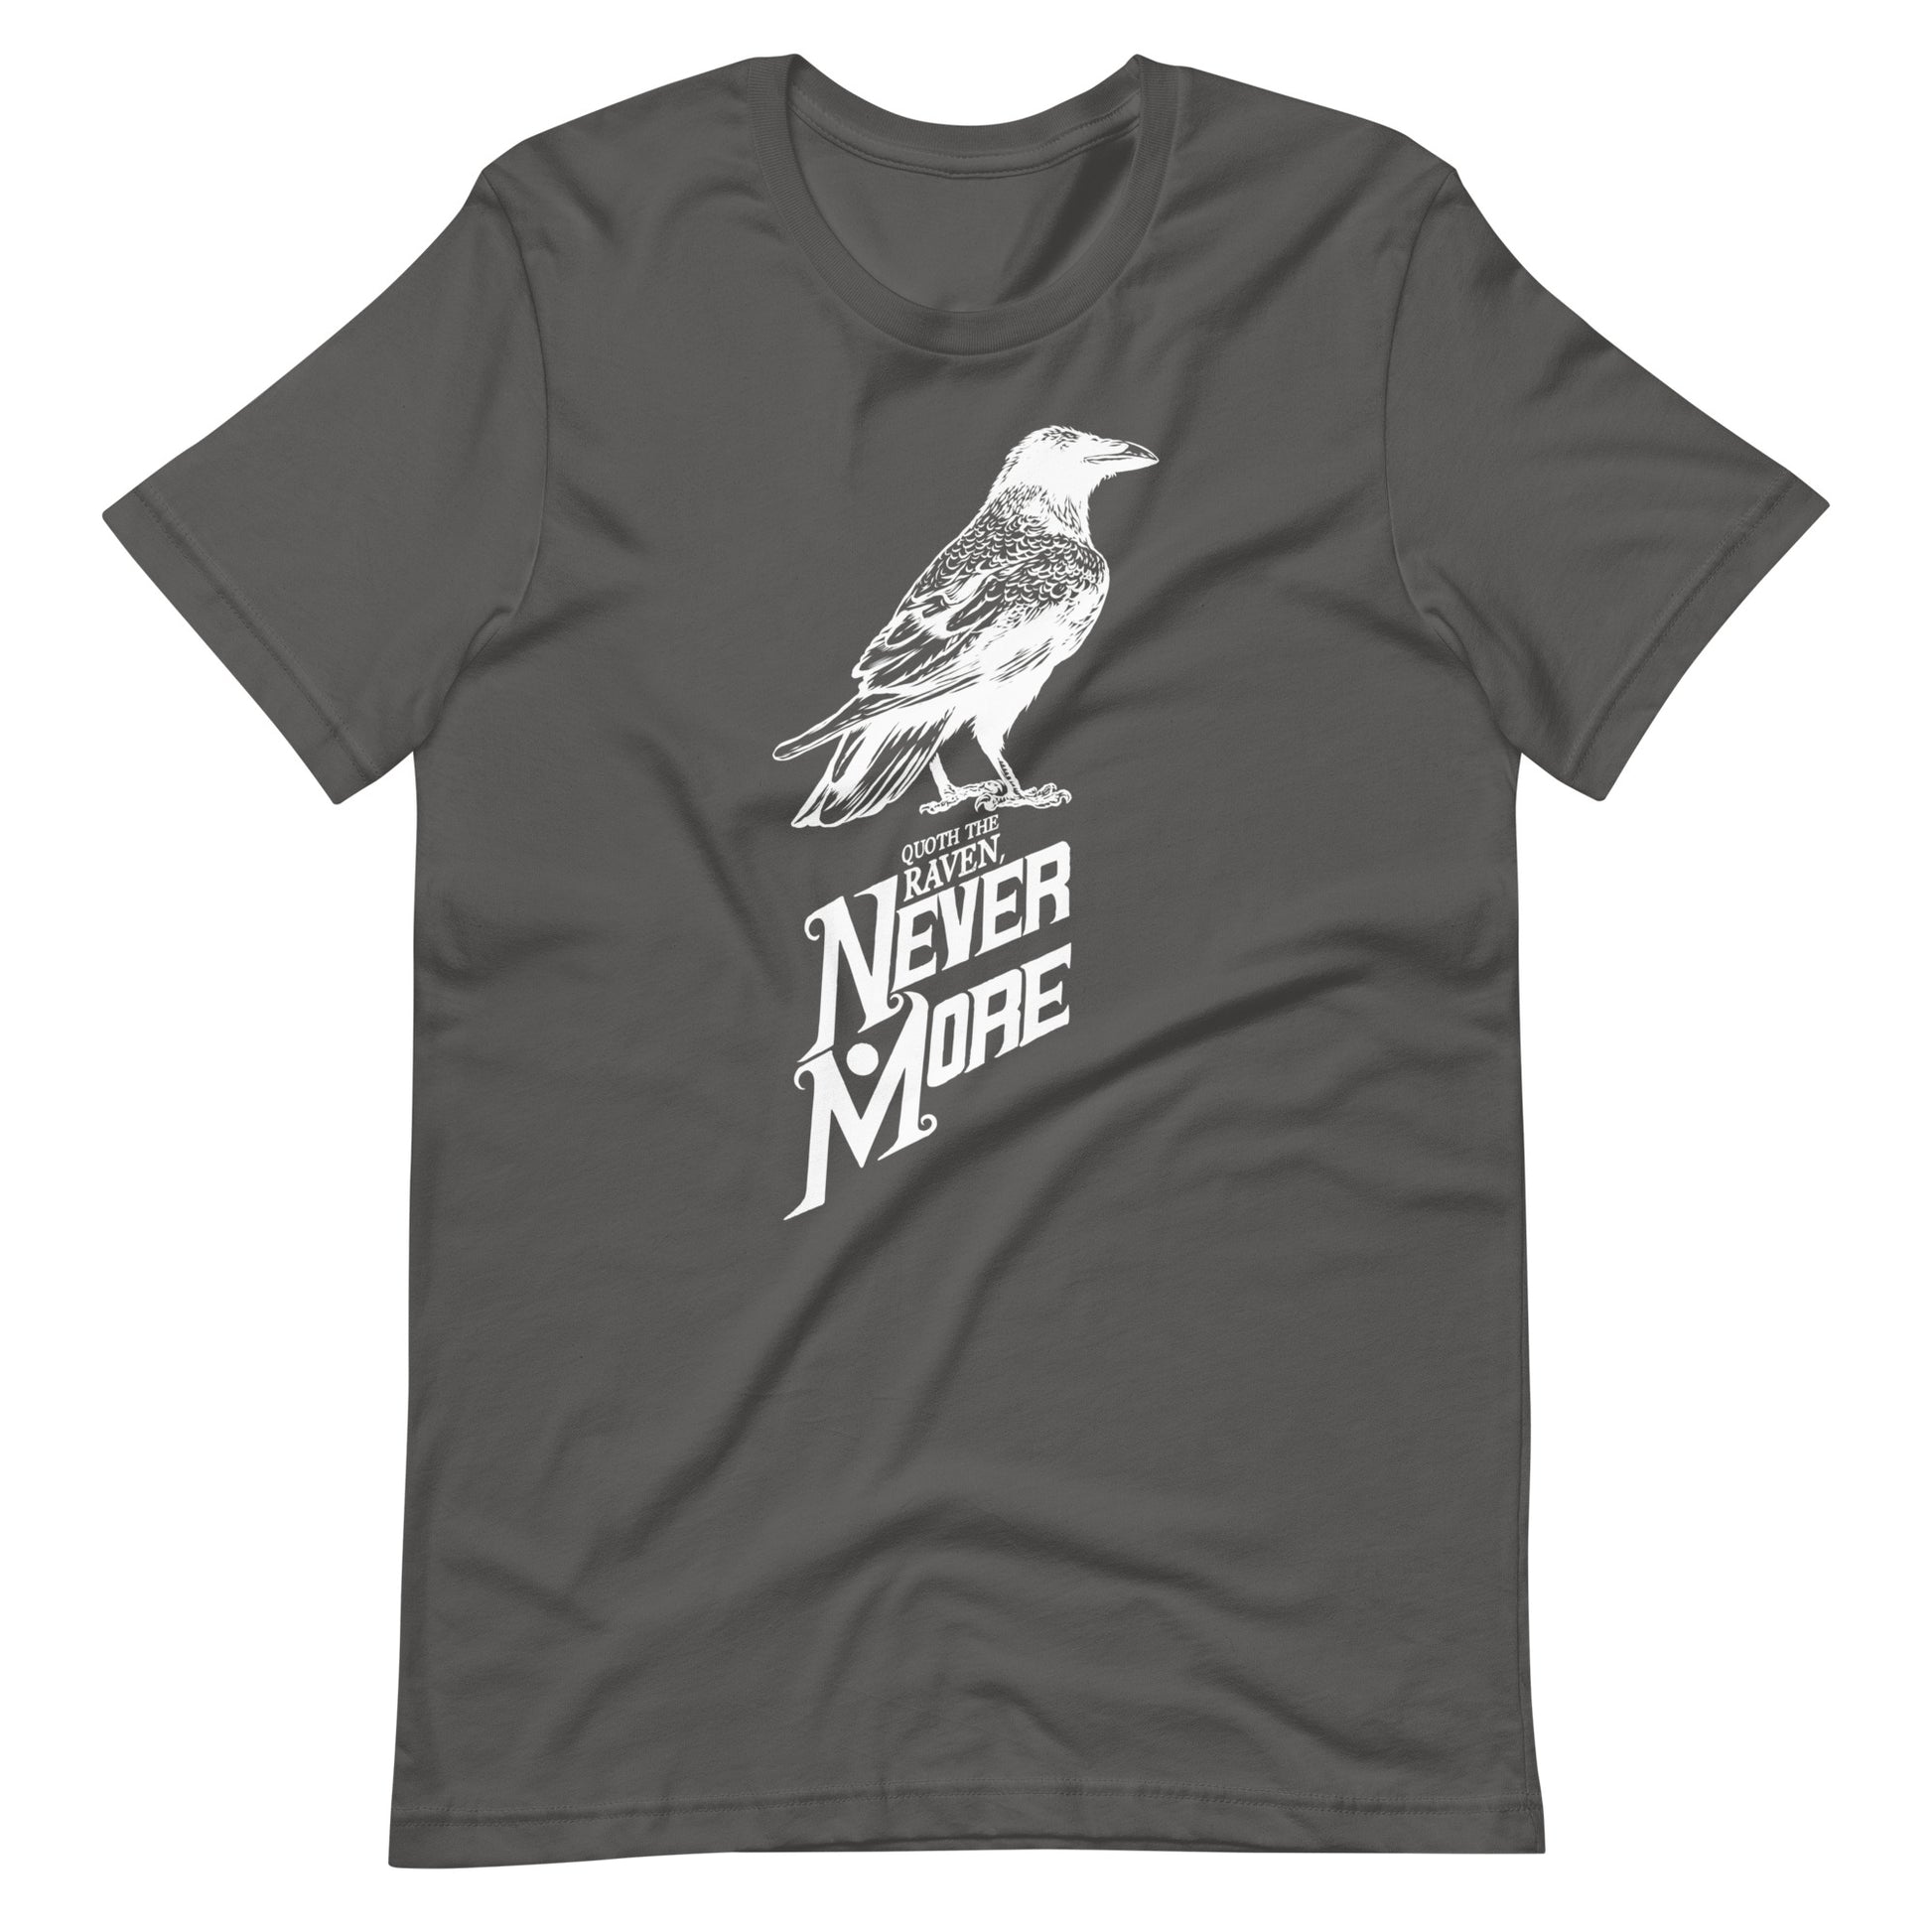 Quoth the Raven Nevermore - Men's t-shirt - Asphalt Front